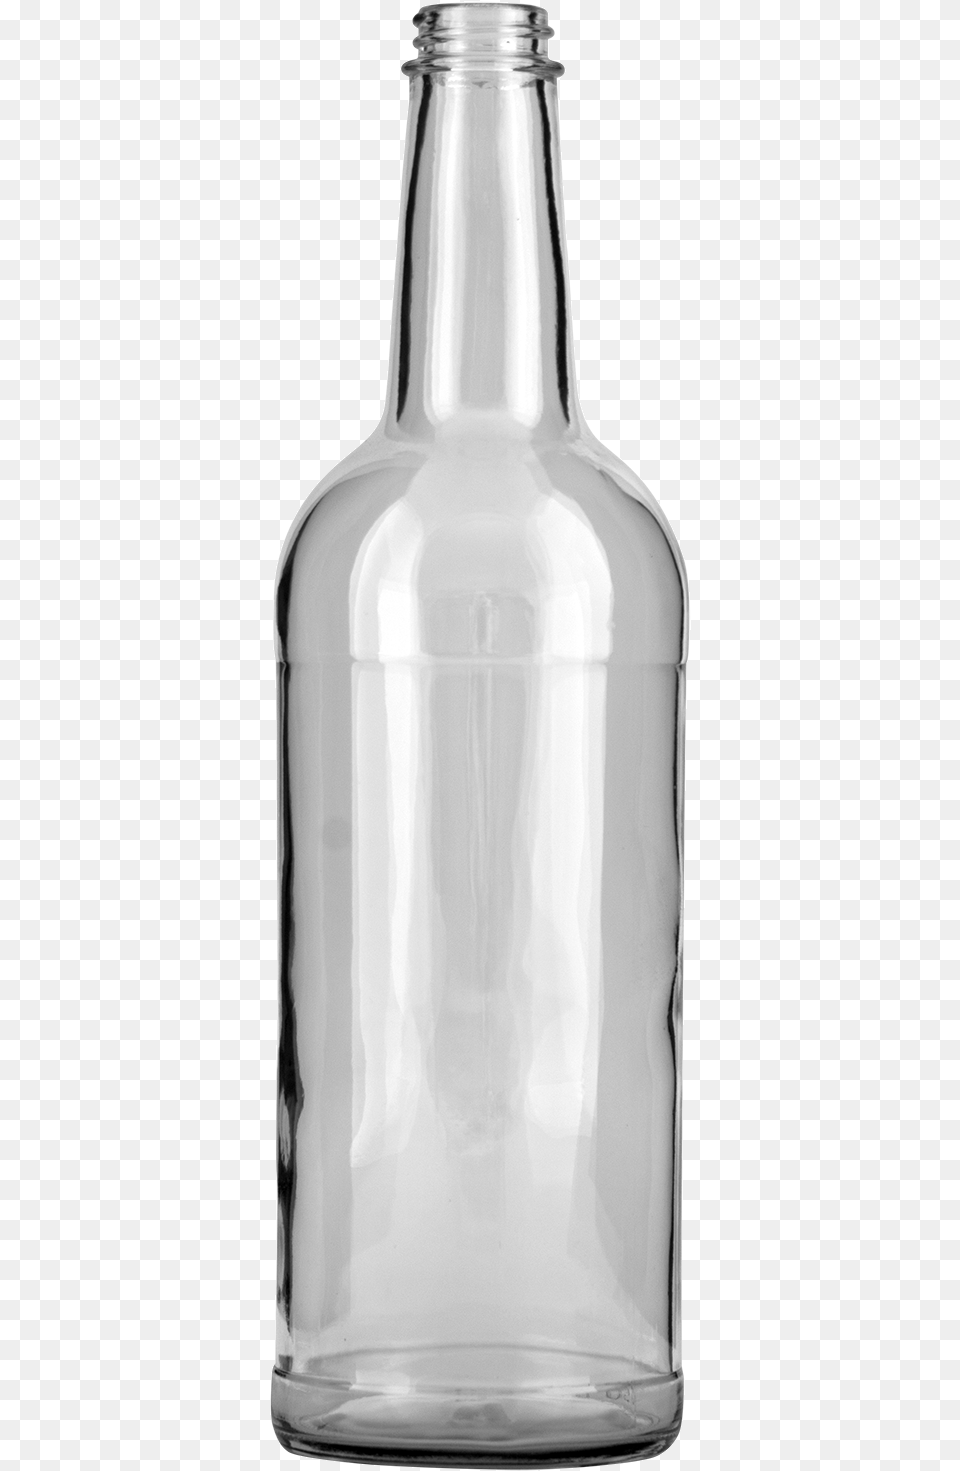 Liquor Bottle Br Ml Liquor Bottle, Glass, Jar, Alcohol, Beer Free Png Download